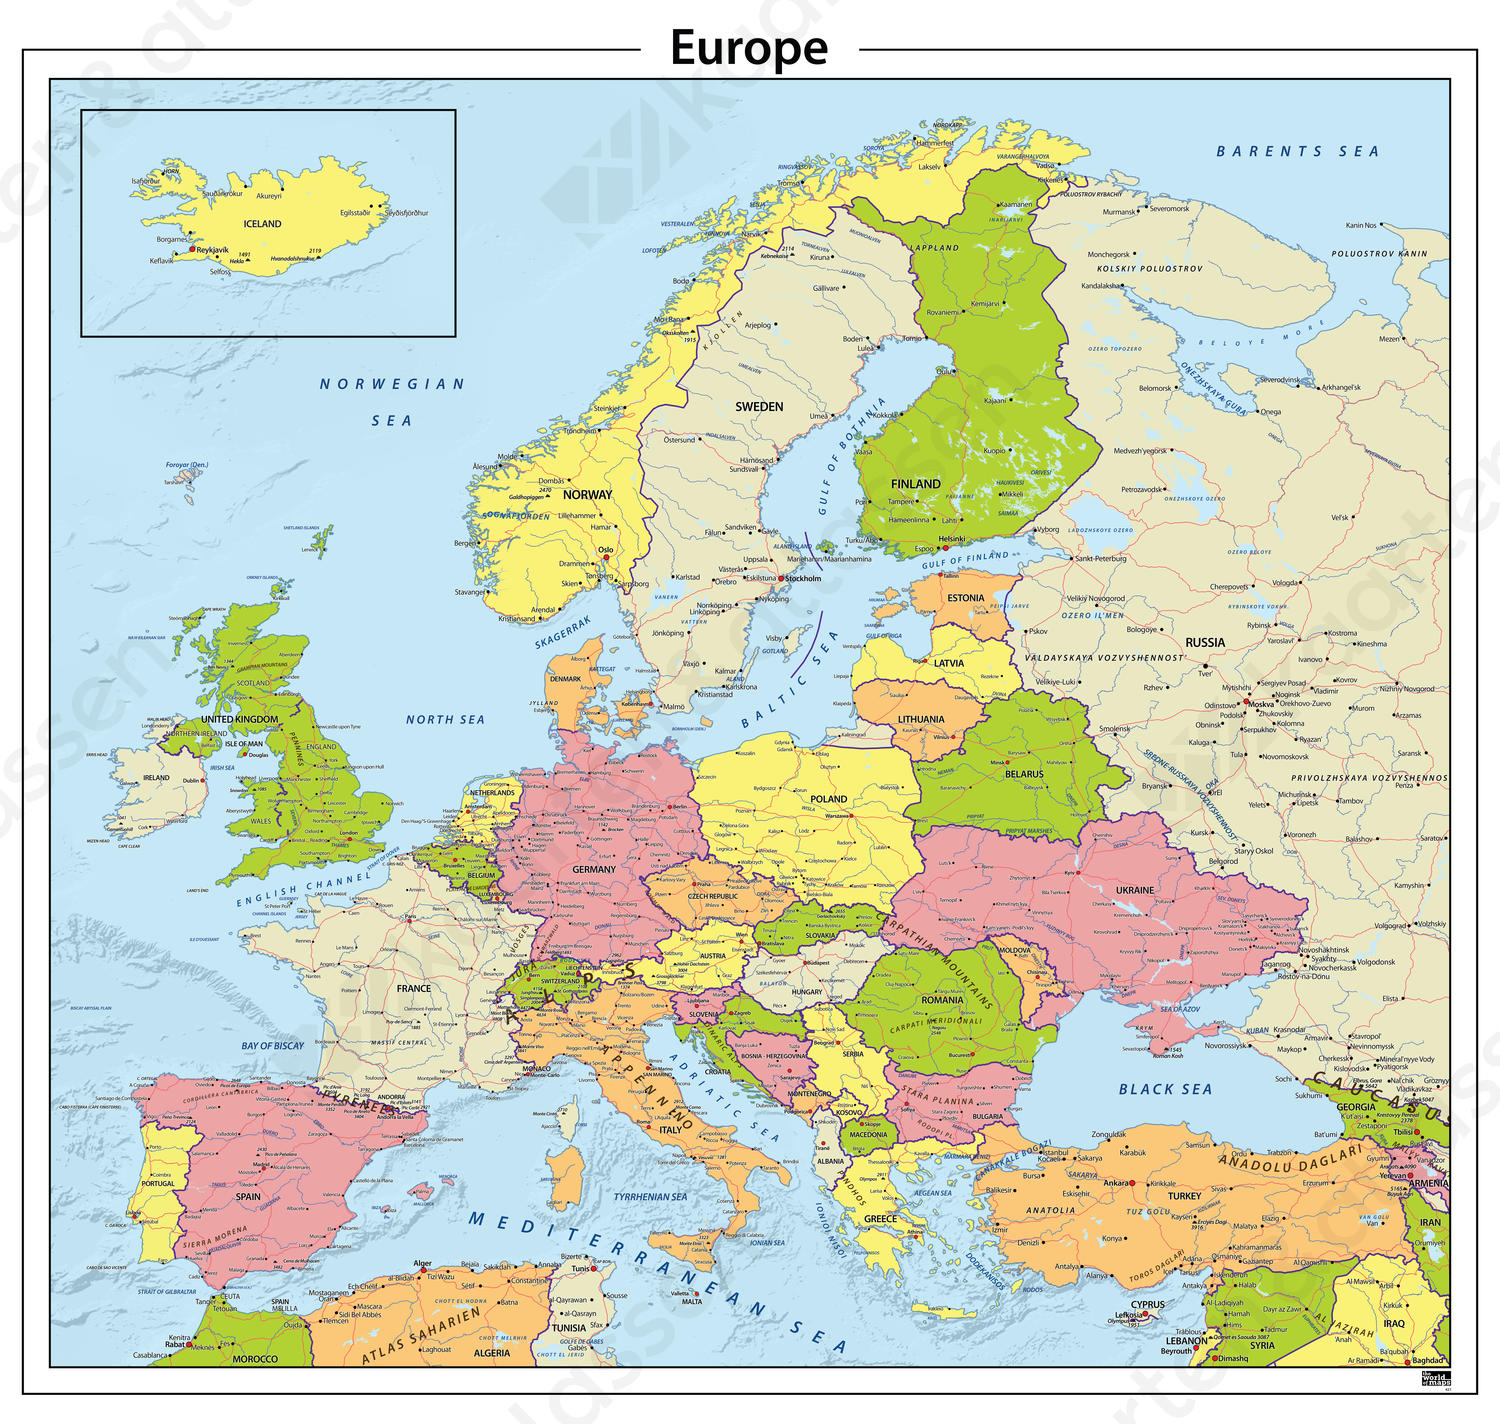 kalmeren Hij Generator Europa staatkundige kaart 621 | Kaarten en Atlassen.nl